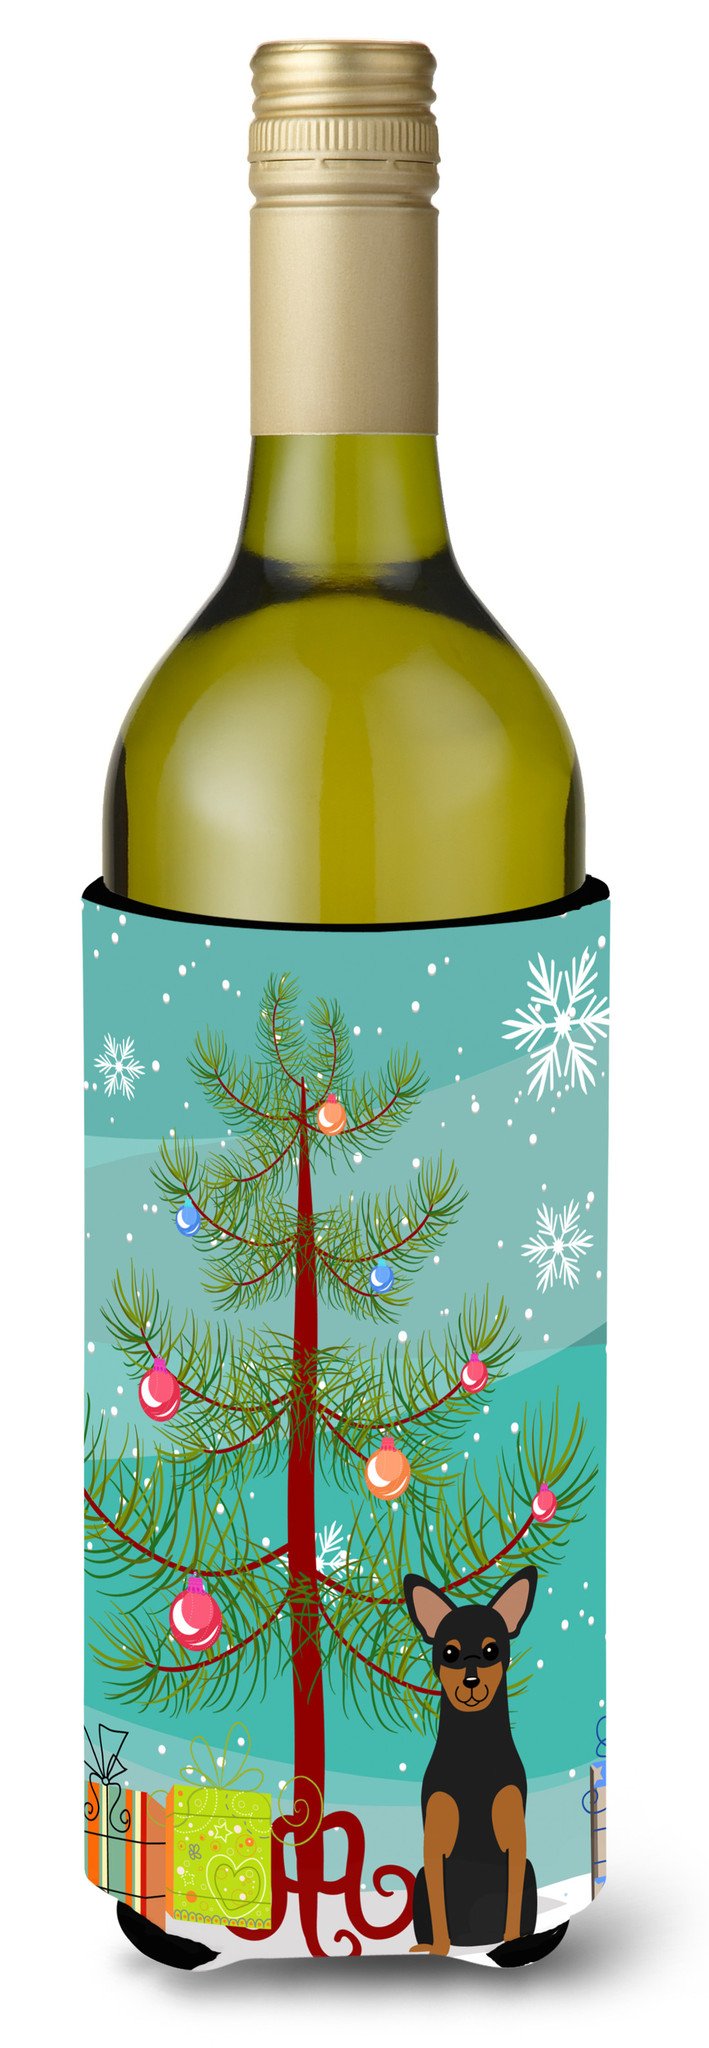 Merry Christmas Tree Manchester Terrier Wine Bottle Beverge Insulator Hugger BB4153LITERK by Caroline's Treasures